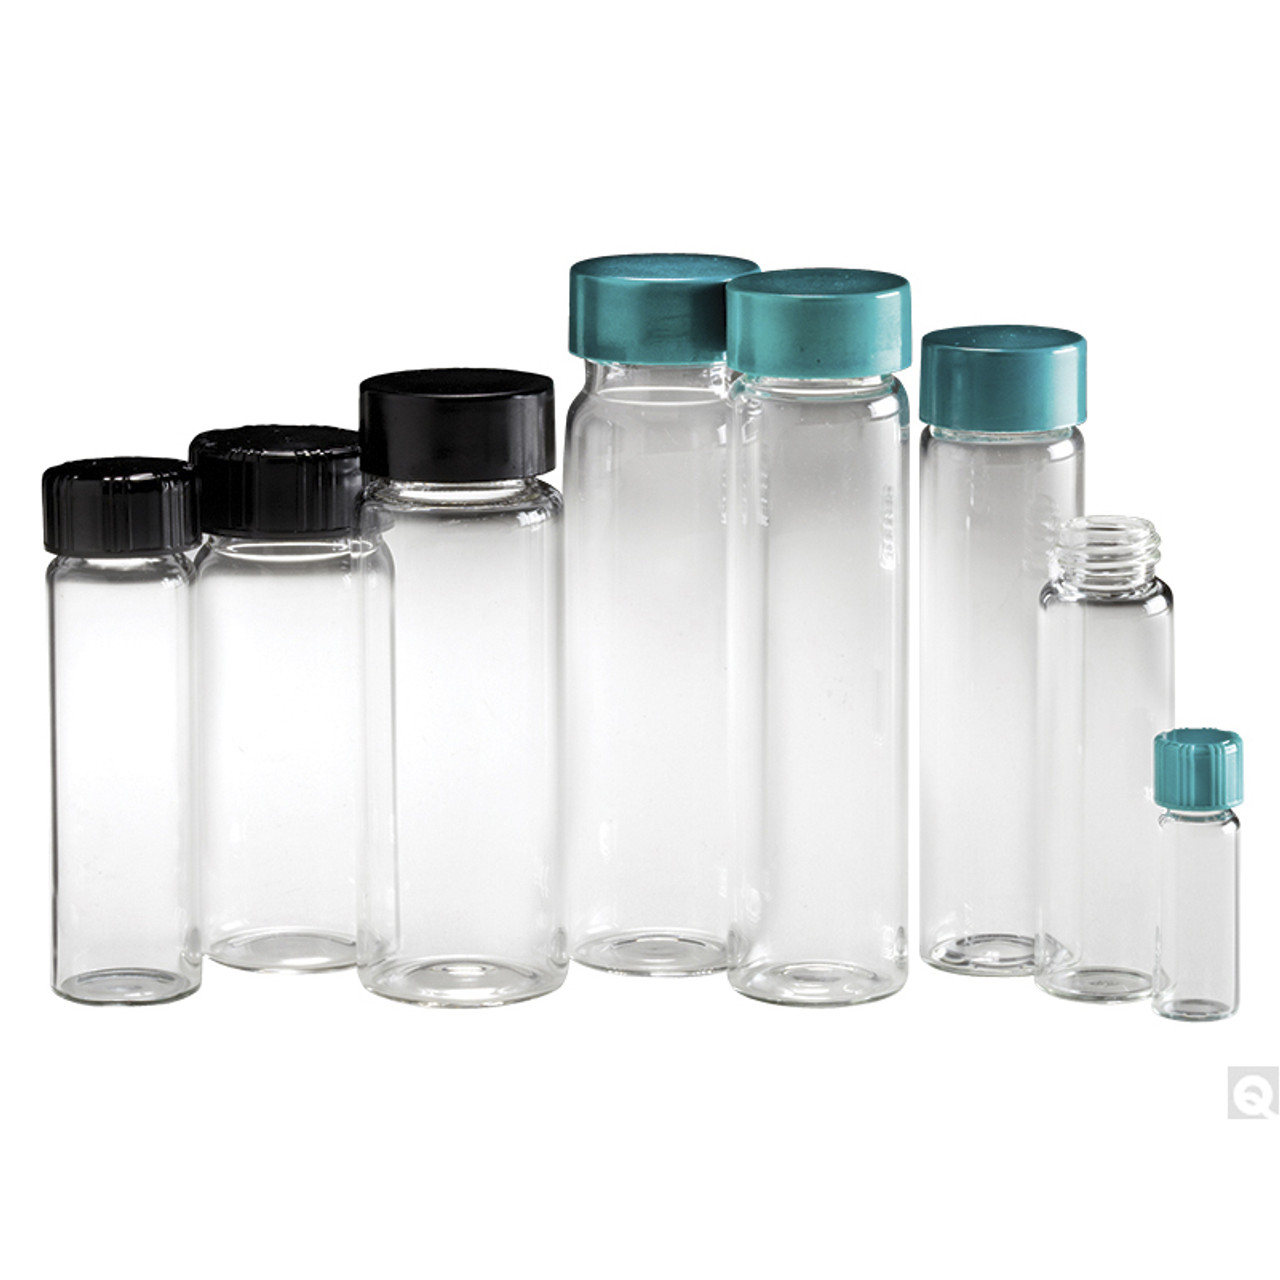 12 oz Glass Bottle w/Drop Lock Thread (12 per case)